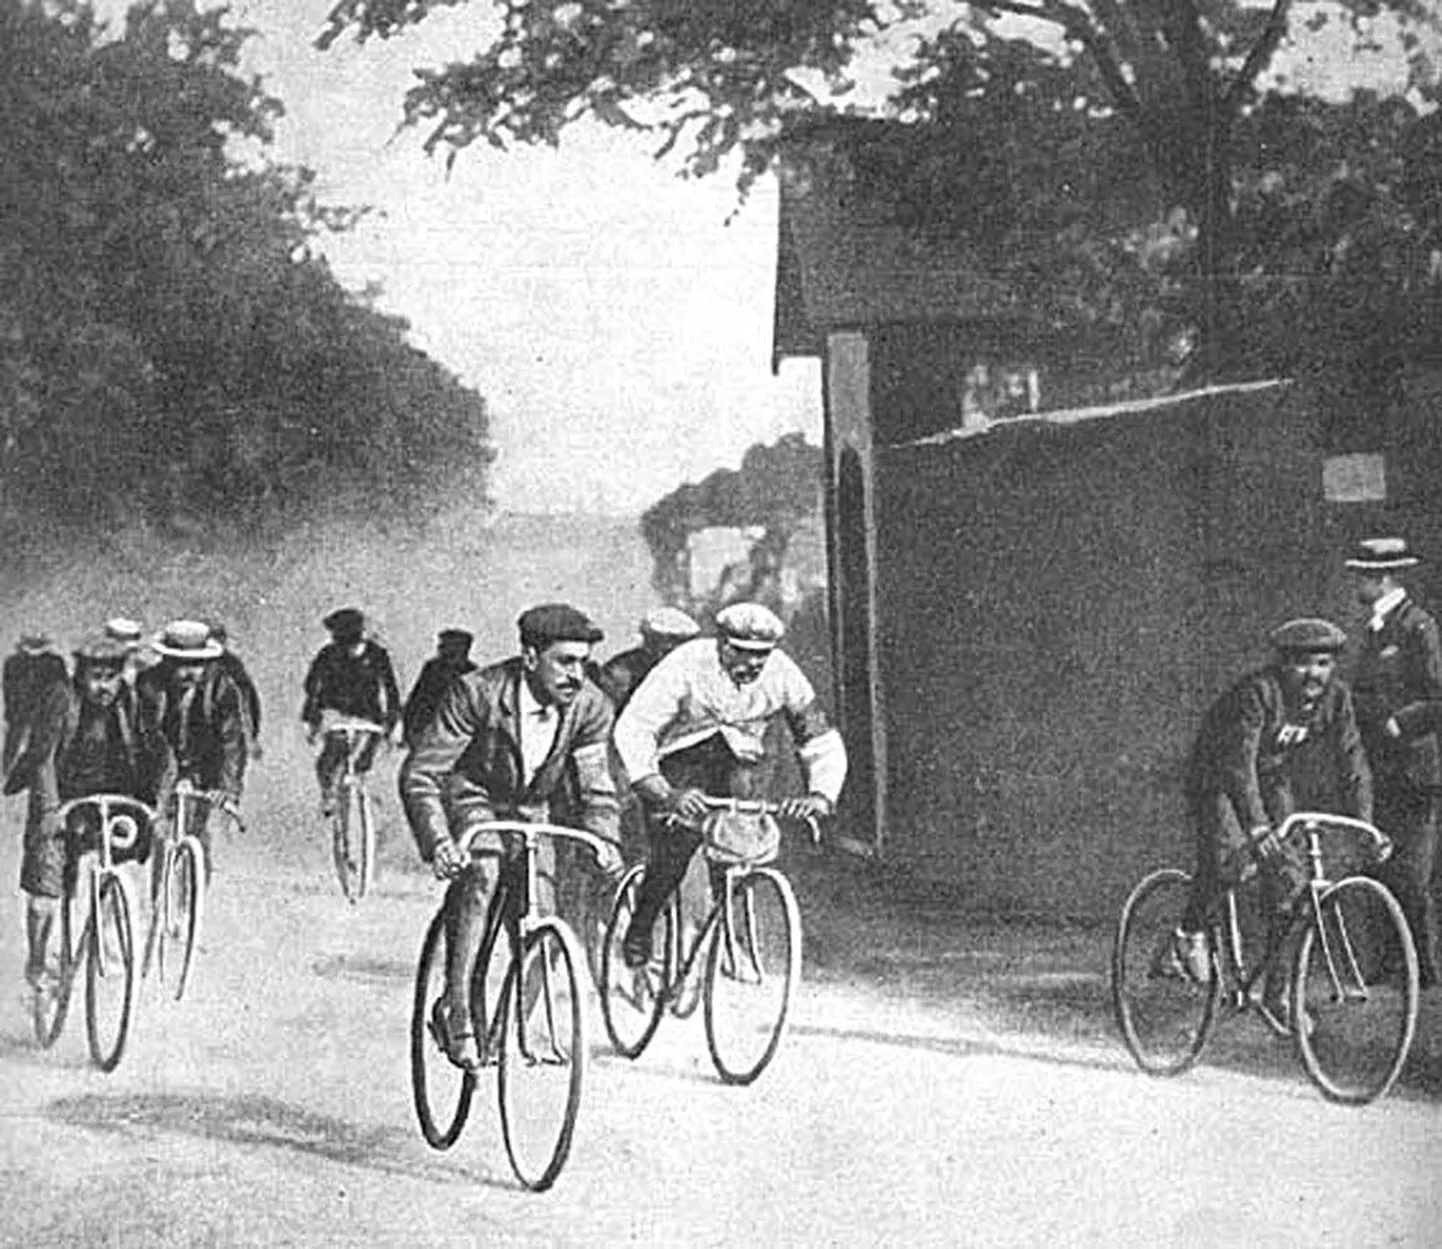 Так это начиналось. Фото 1903 года, с первой гонки Tour de France, когда уже на первом этапе один из велогонщиков прибегнул к обману, преодолев часть пути на автомобиле.